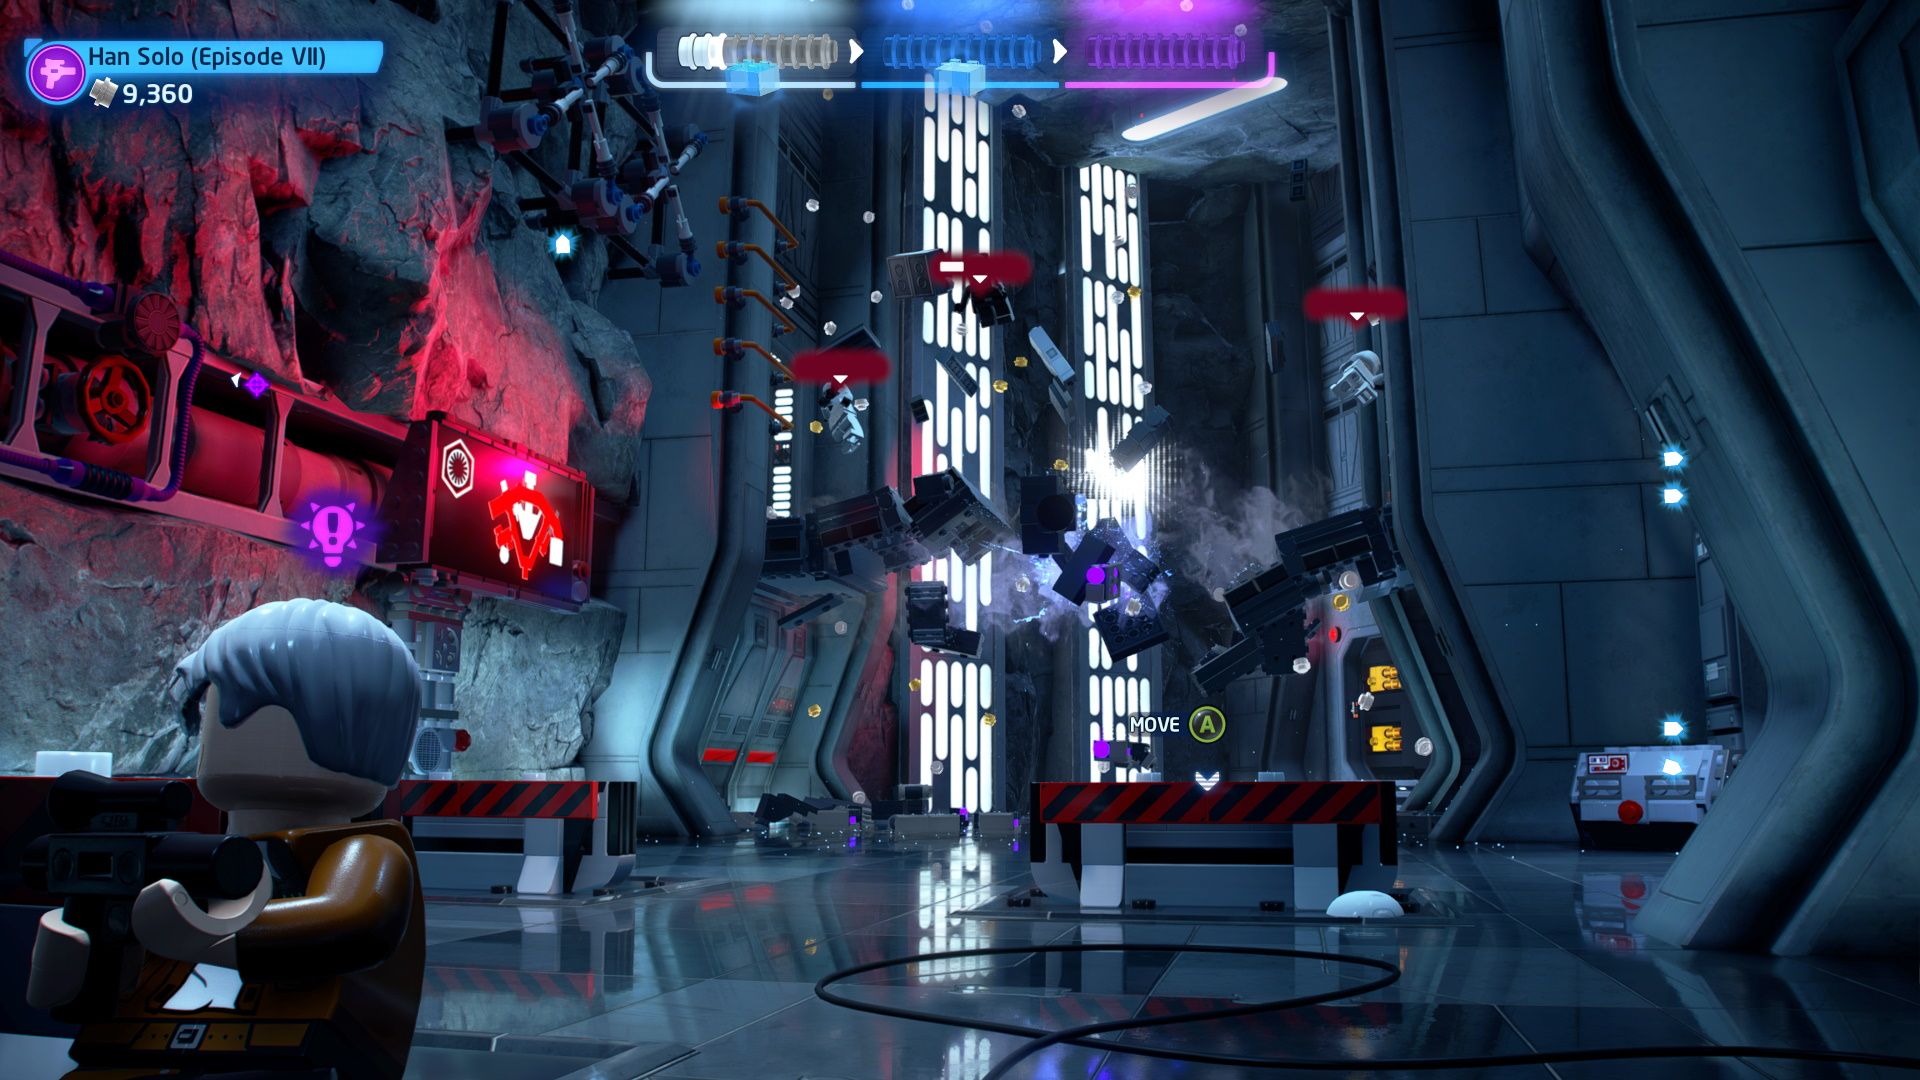 Han-Solo destroys the sniper's bridge